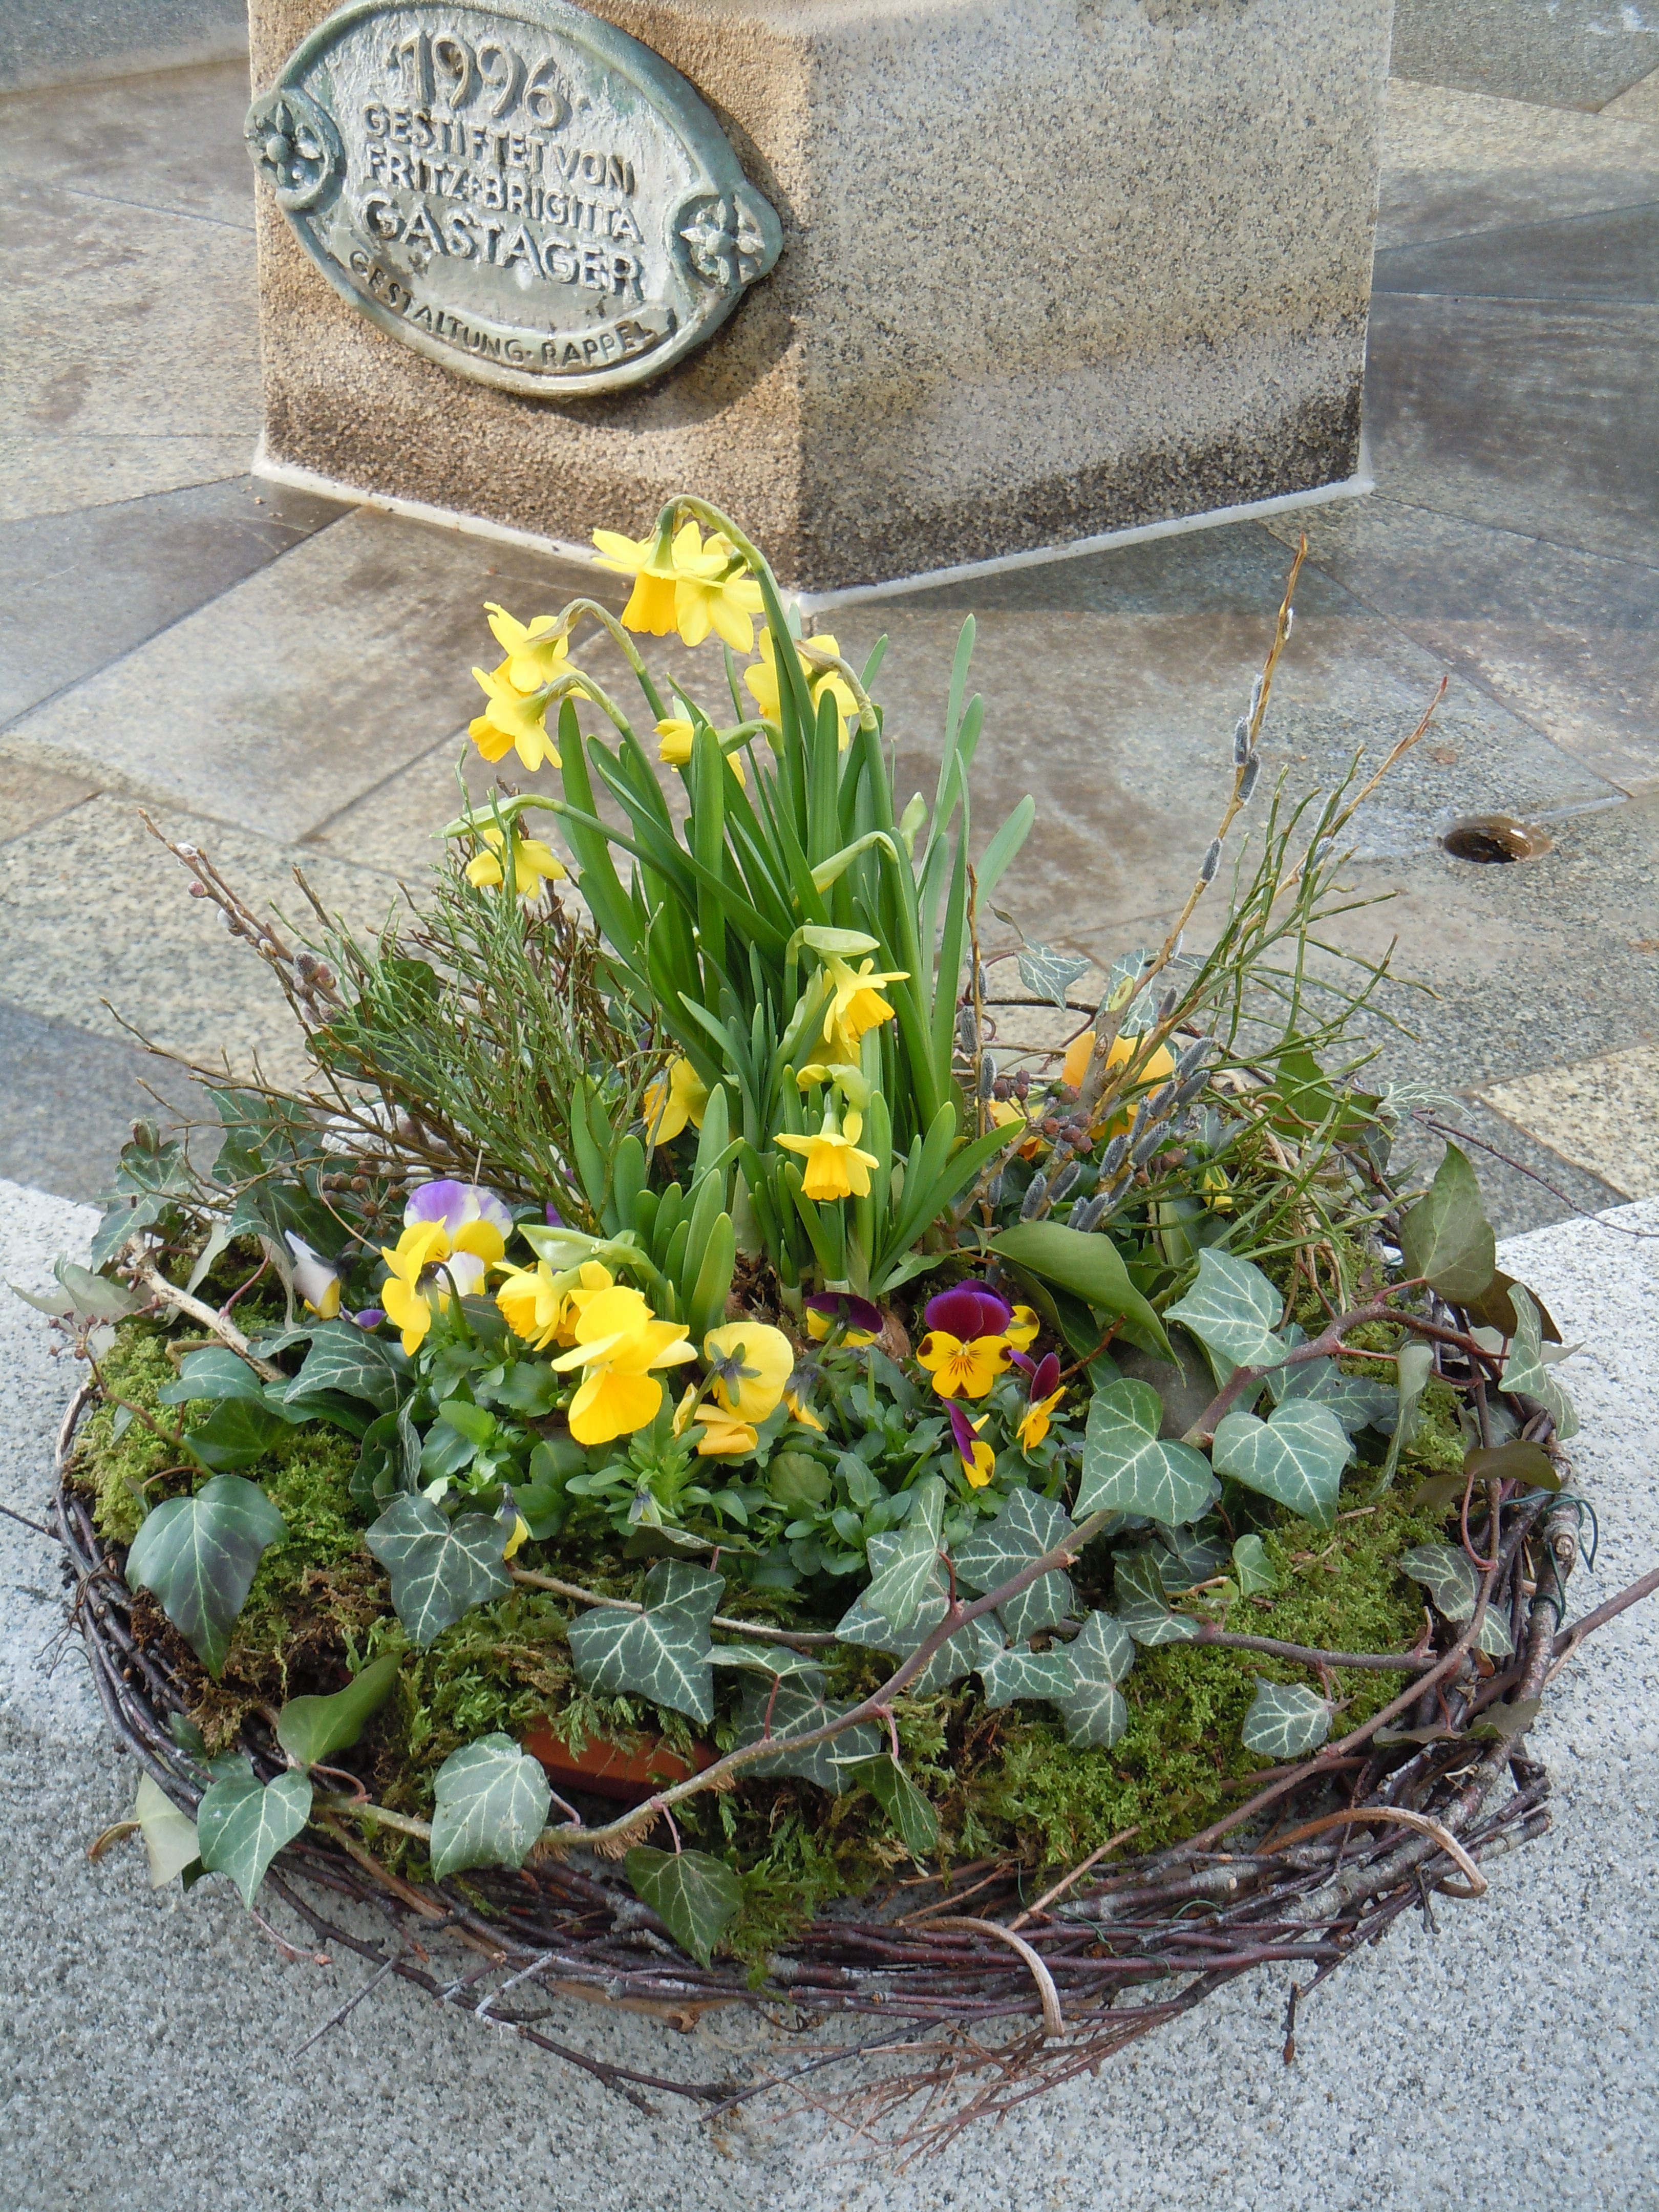 Osterschmuck am Brunnen auf dem Rathausplatz in Inzell